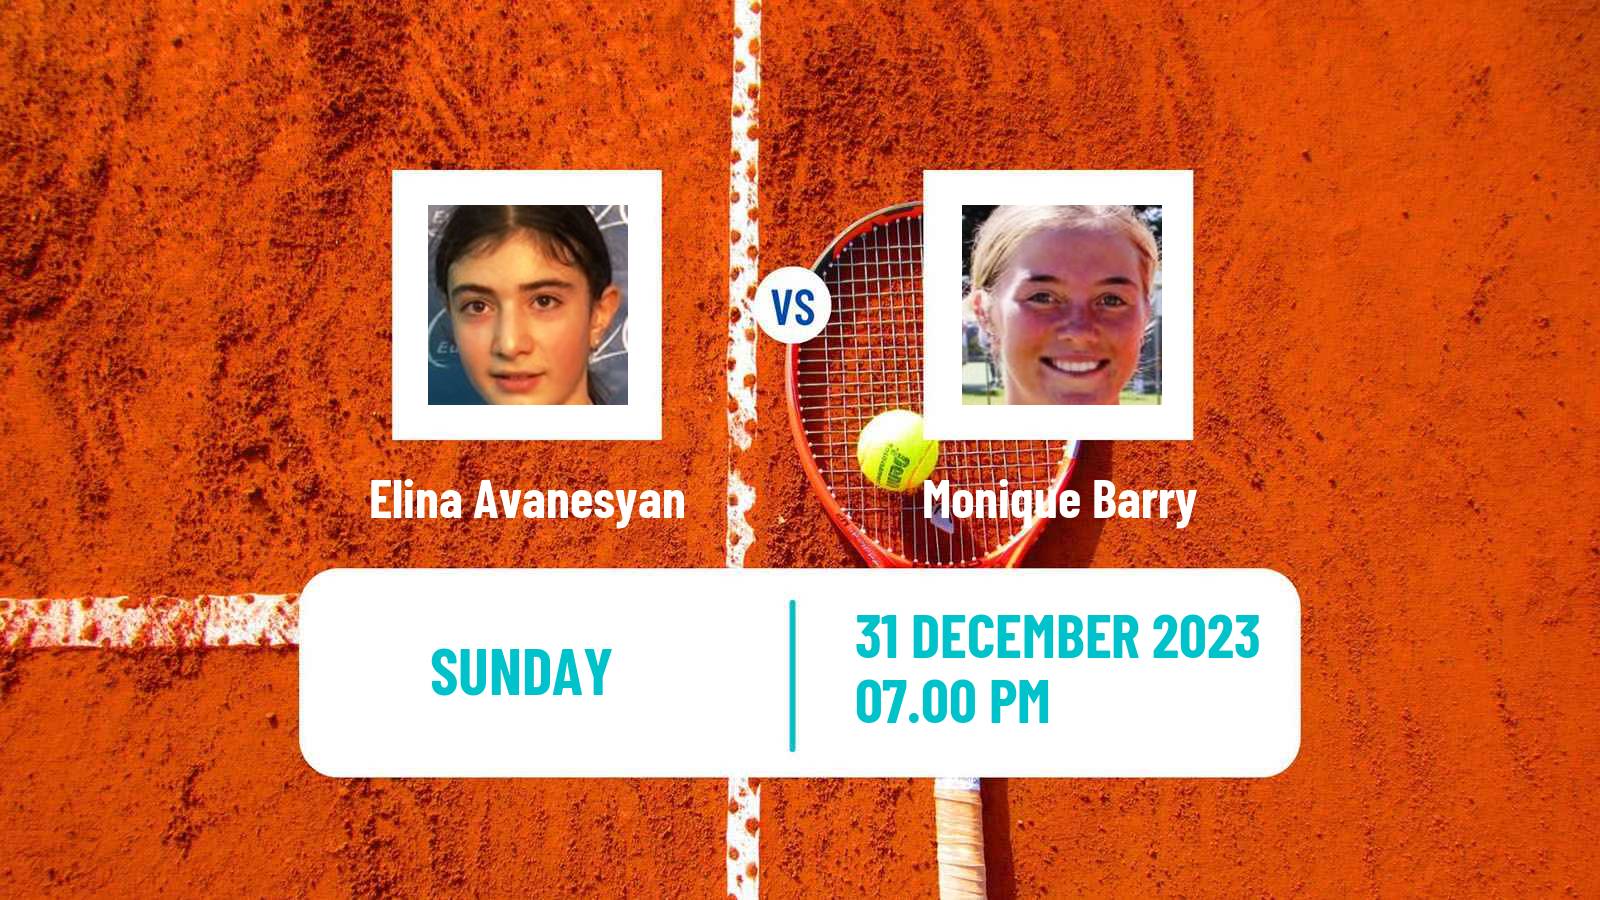 Tennis WTA Auckland Elina Avanesyan - Monique Barry